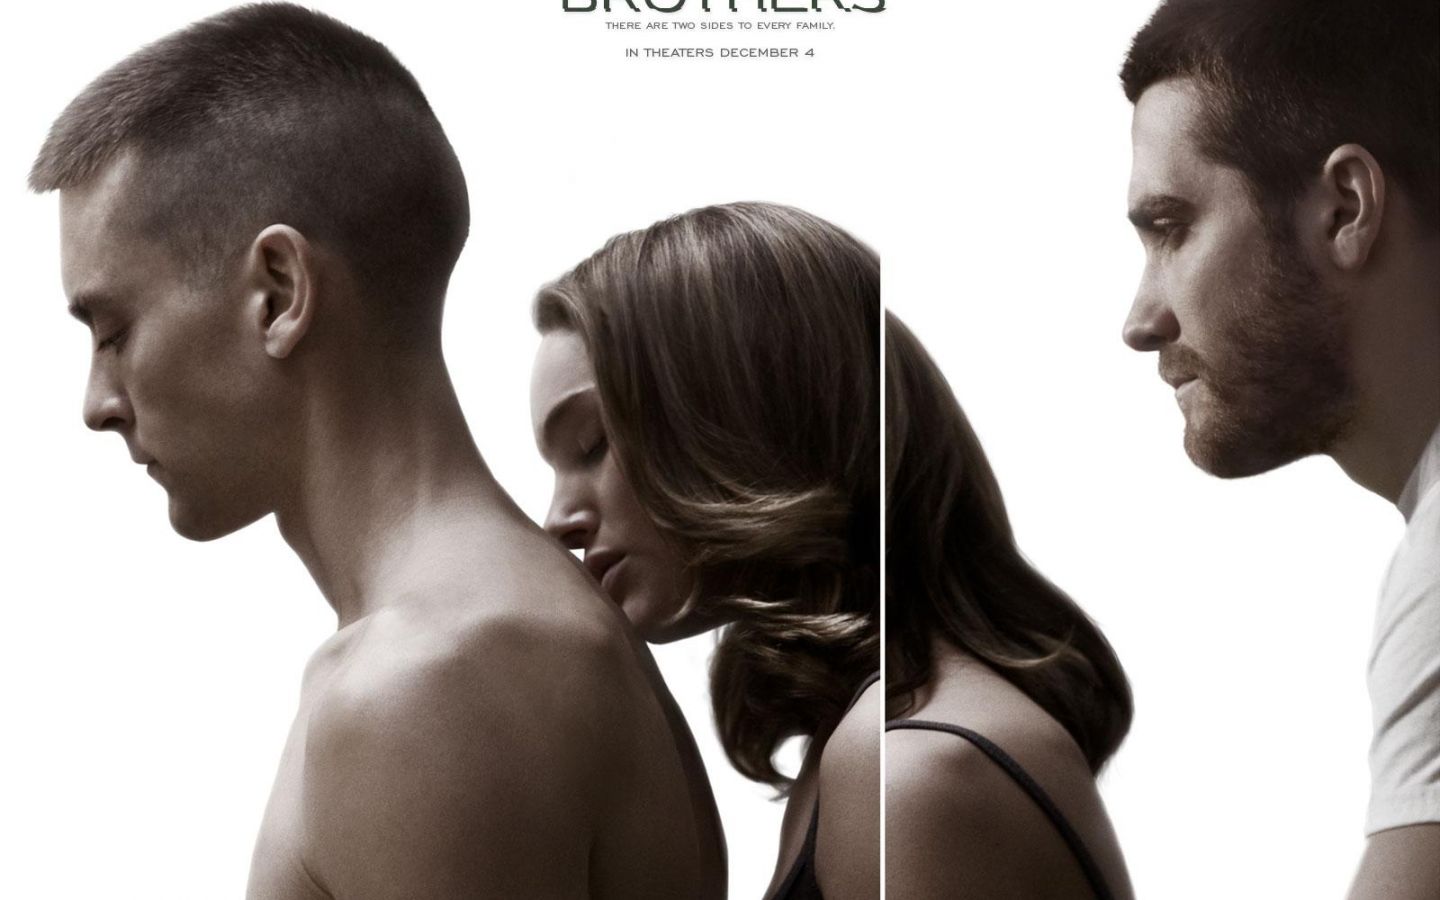 Фильм Братья | Brothers - лучшие обои для рабочего стола